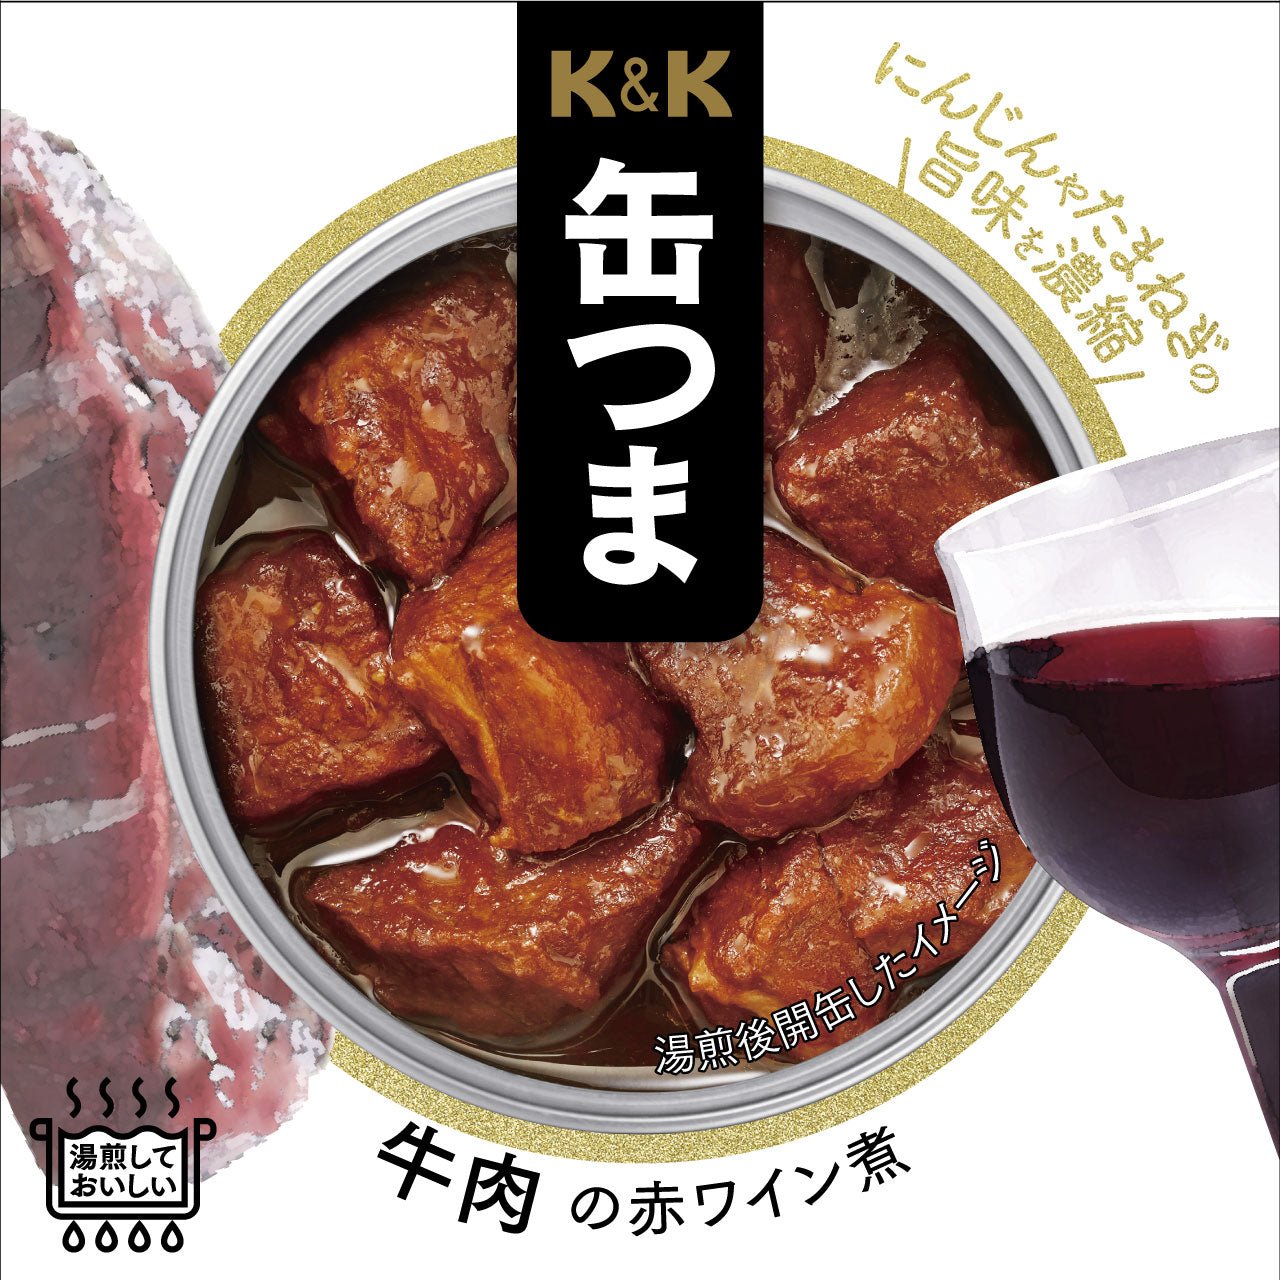 K & K 통조림 쇠고기의 삶은 레드 와인